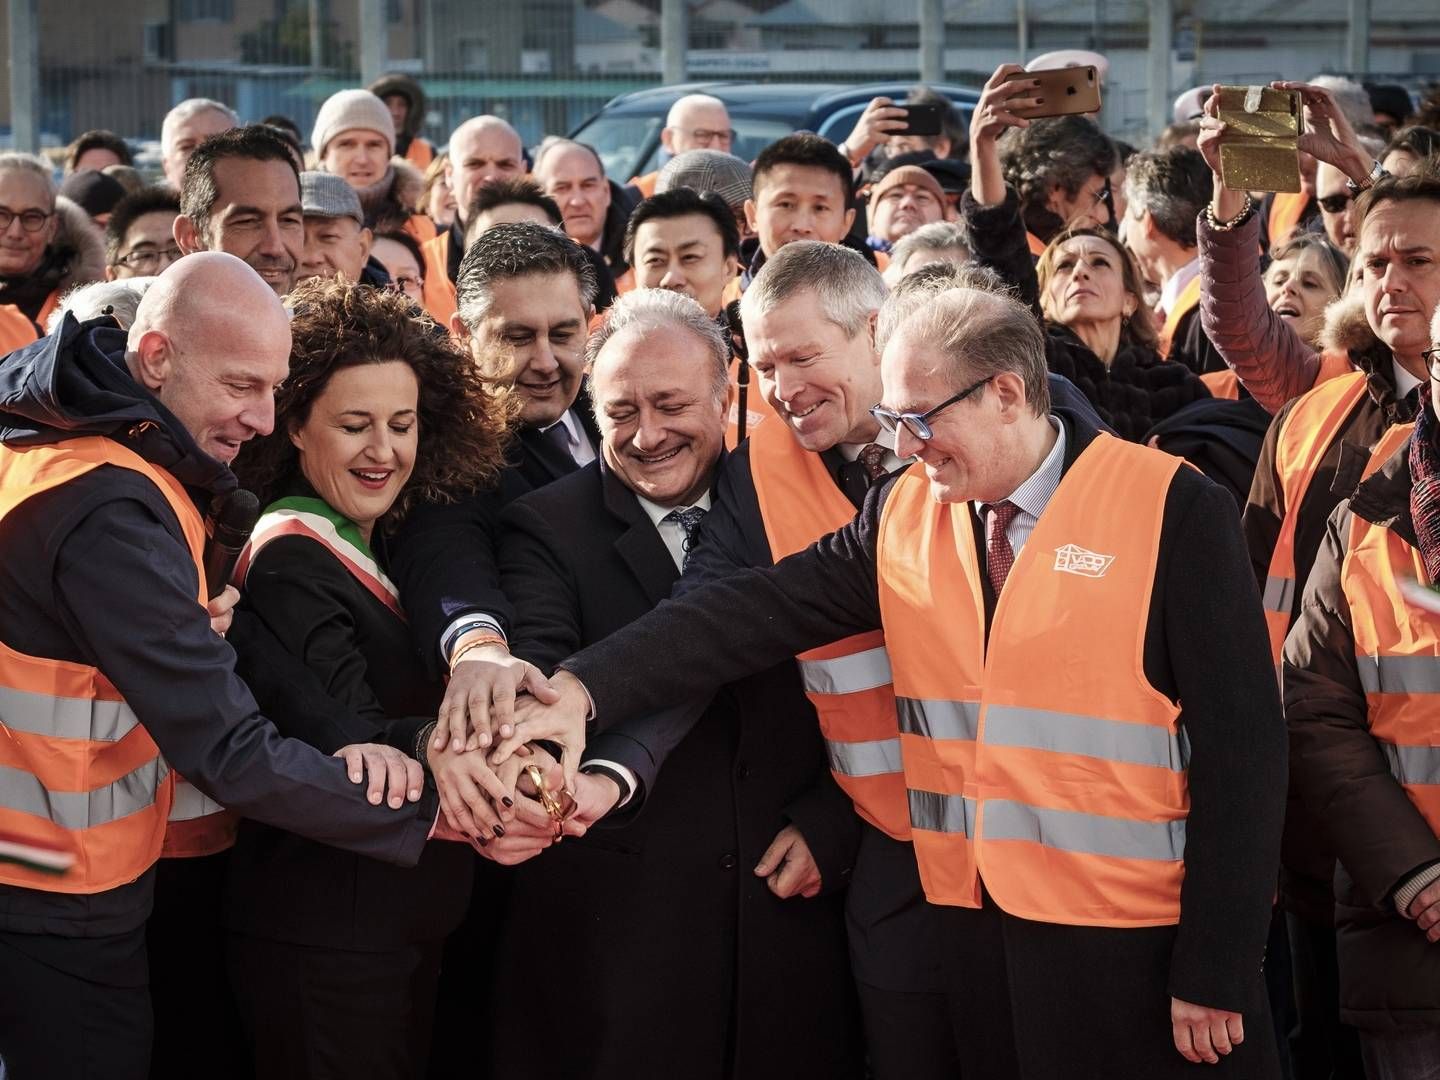 Adm. direktør i APM Terminals, Morten Engelstoft (nr. to fra højre i forreste række) var med til at indvie Vado Ligure-terminalen i Italien. | Foto: PR-FOTO